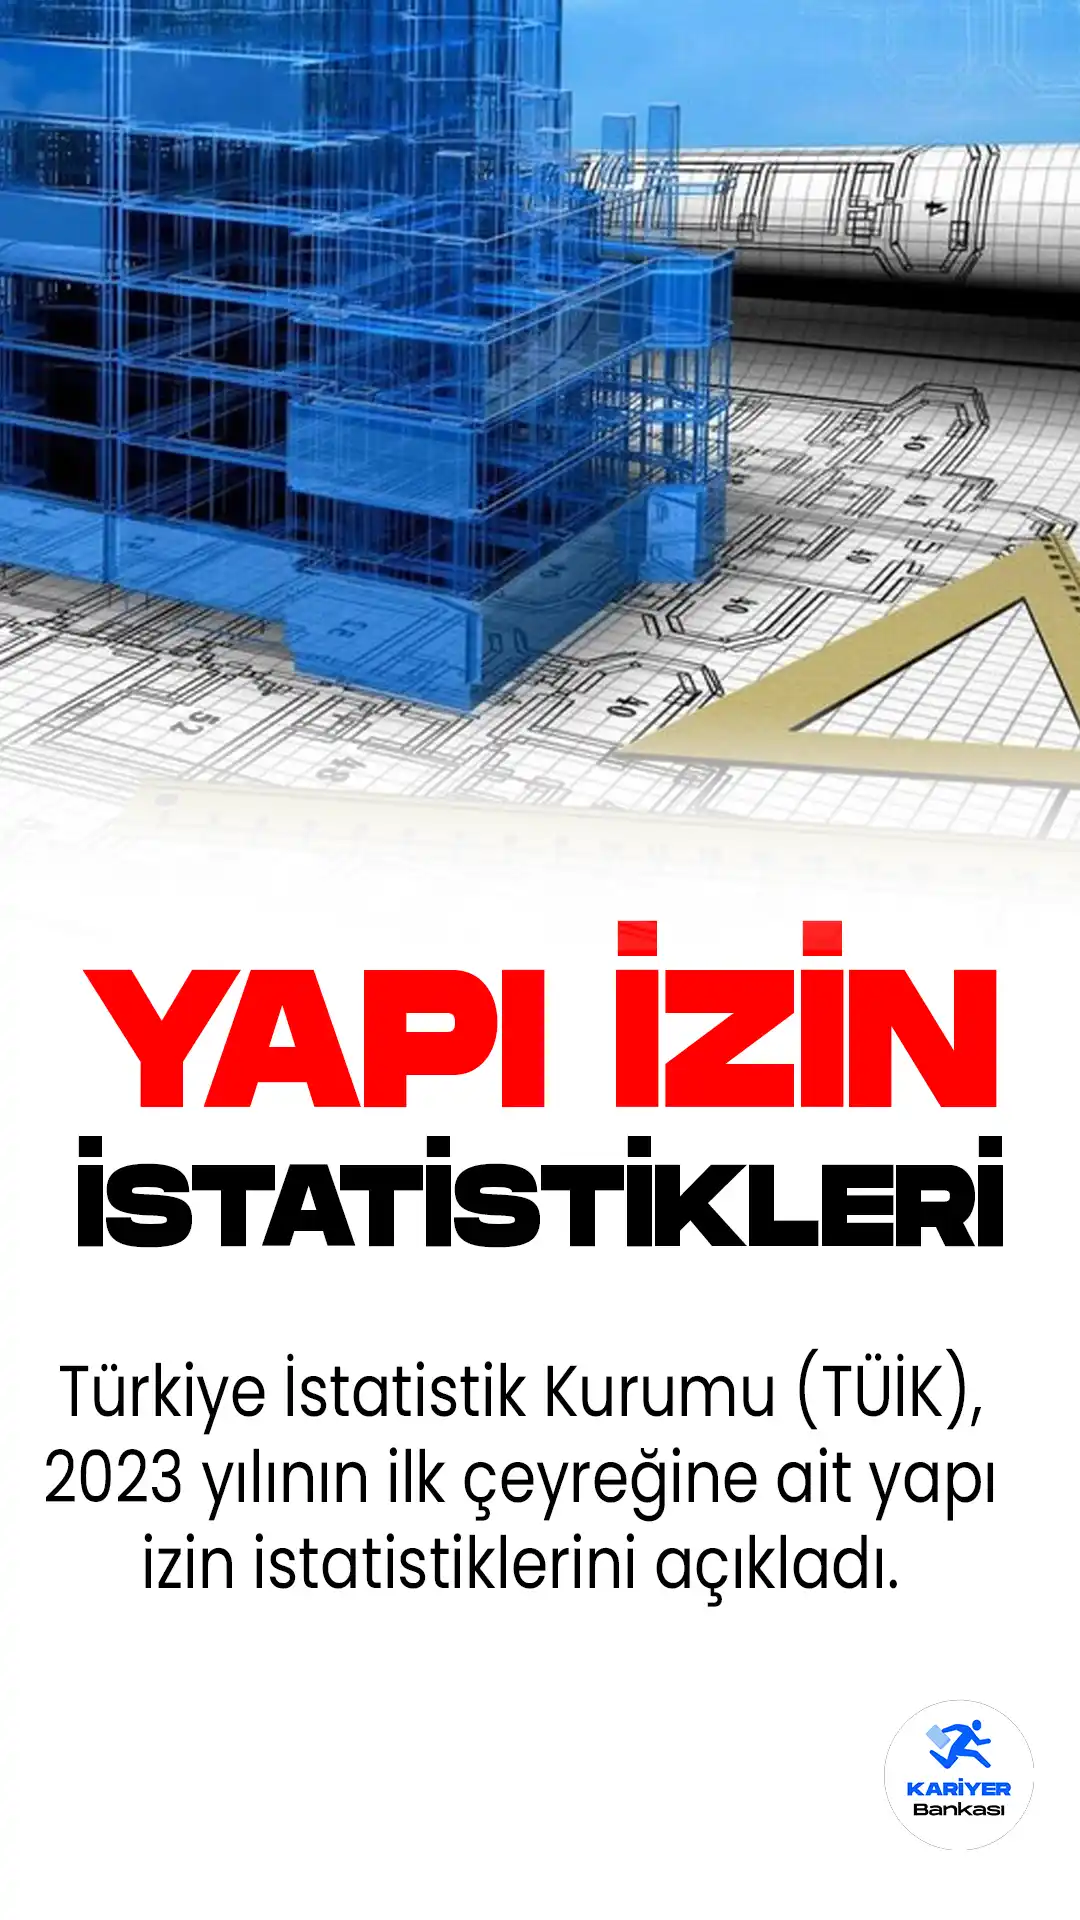 Türkiye İstatistik Kurumu (TÜİK), 2023 yılının ilk çeyreğine ait yapı izin istatistiklerini açıkladı. Detaylar bu haberimizde...